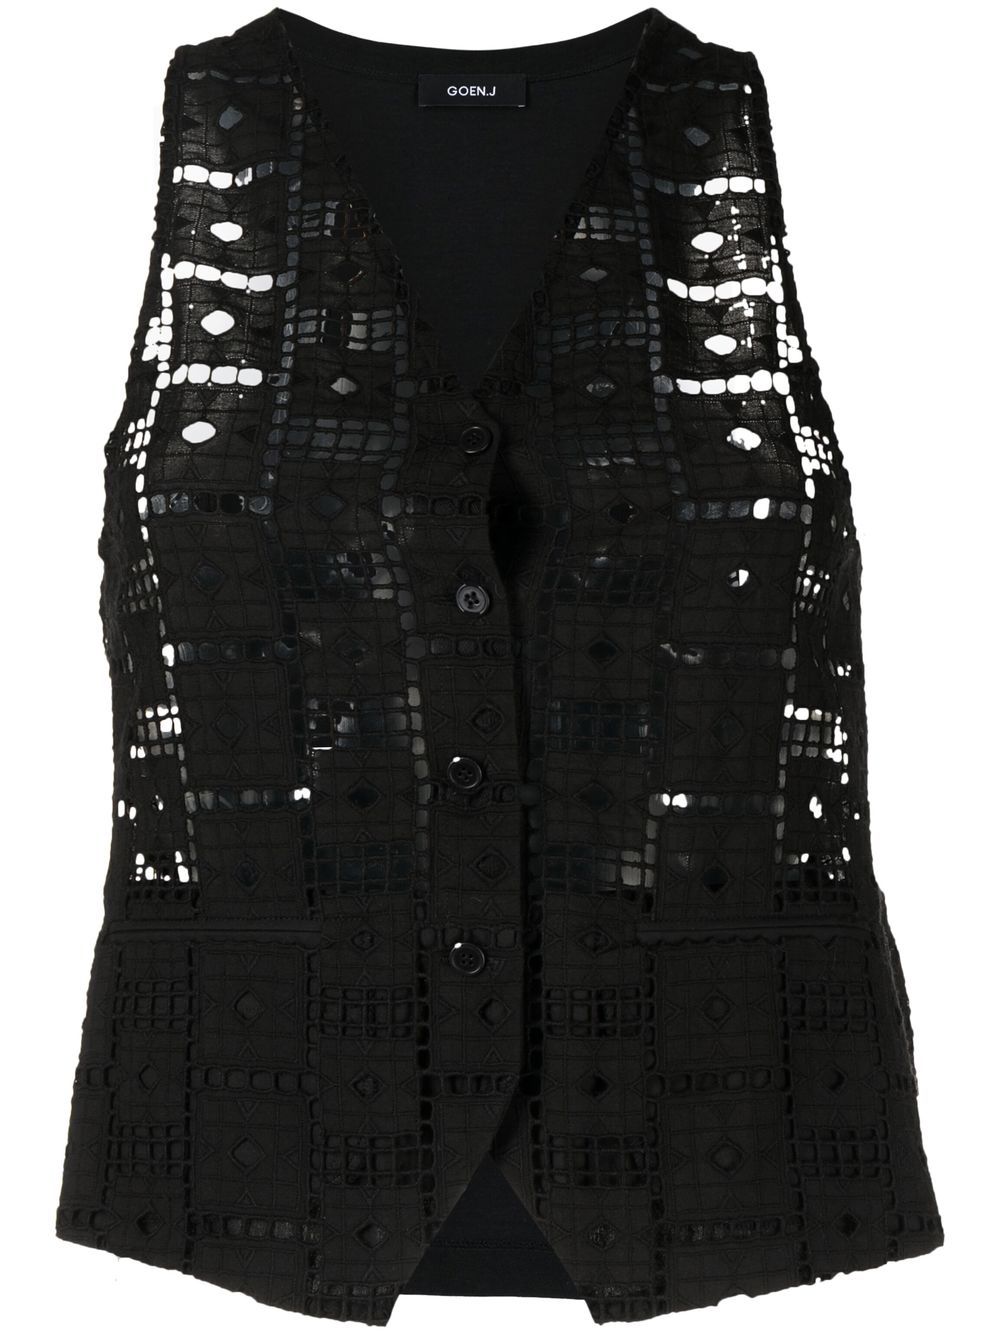 Goen.J cut out-detail waistcoat - Black von Goen.J